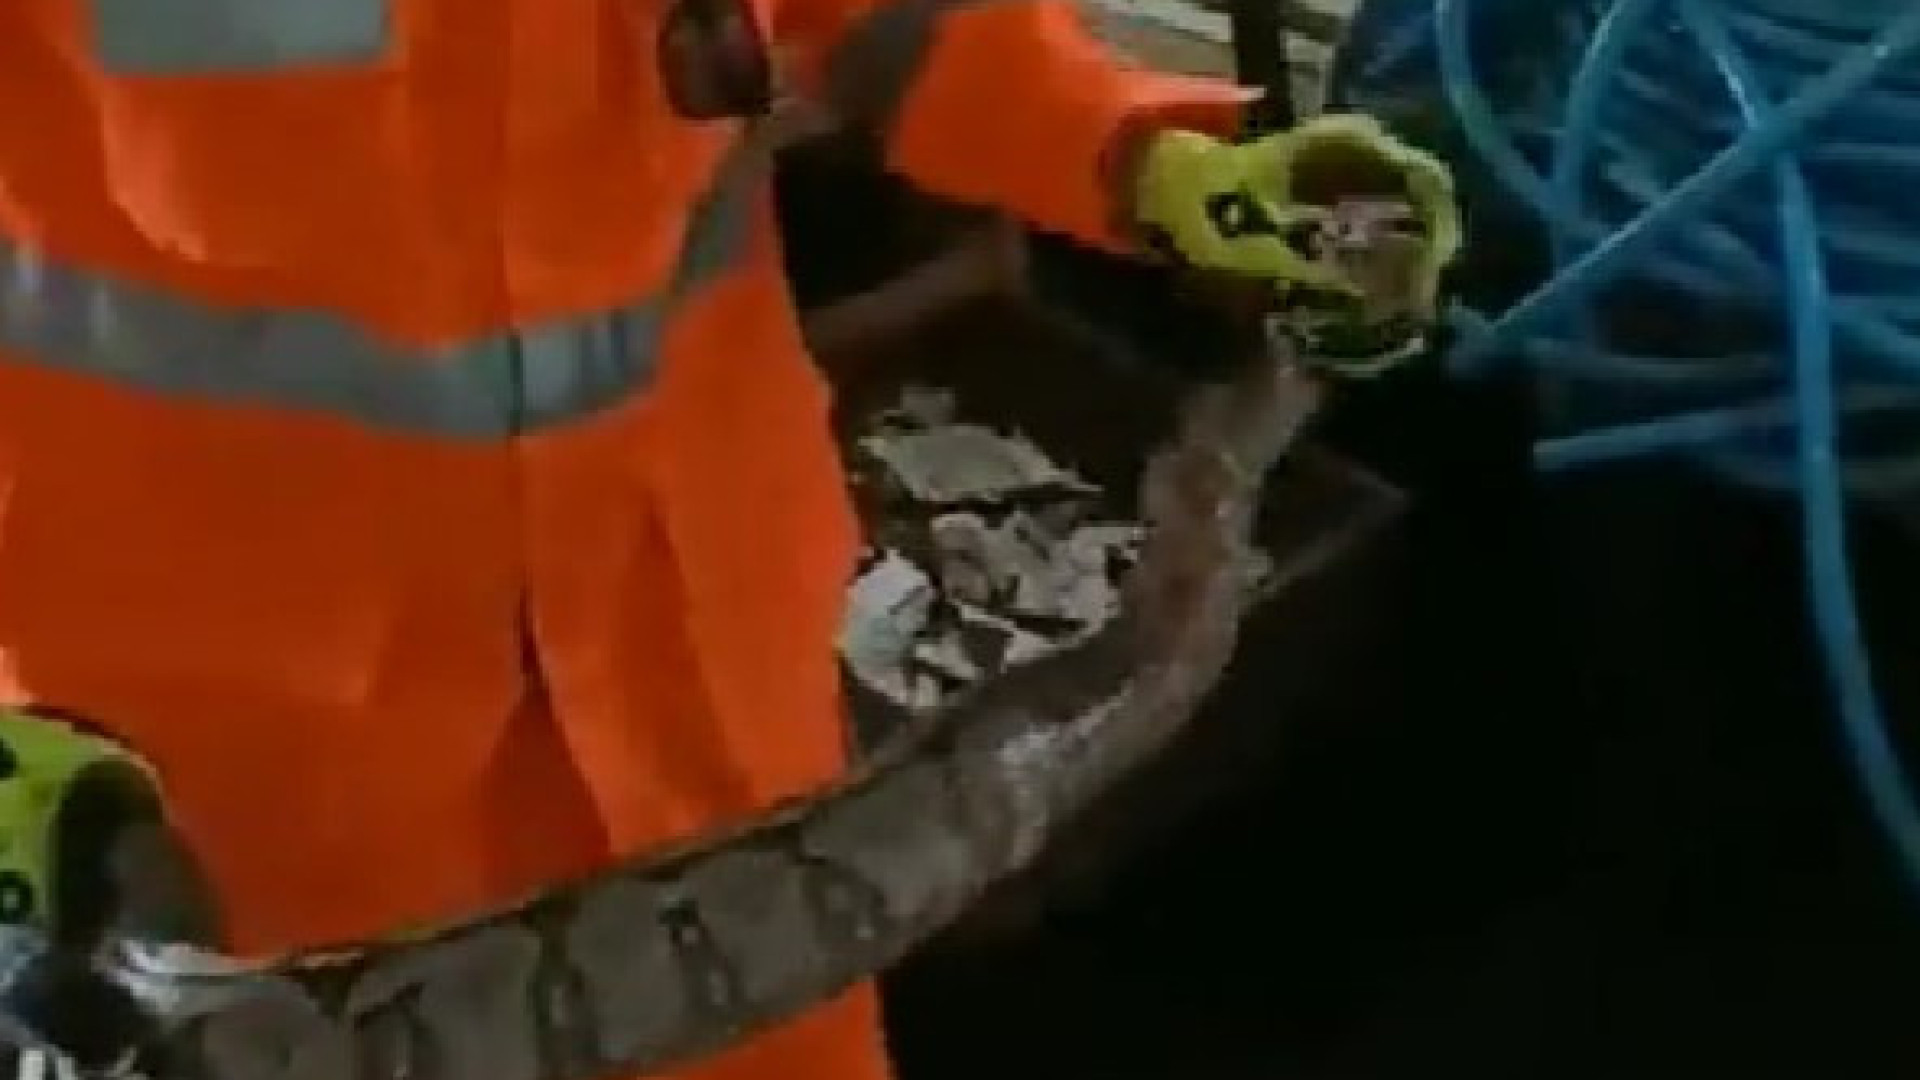 Jiboia de 1,5 m é encontrada em gaveta de casa em Minas Gerais; vídeo